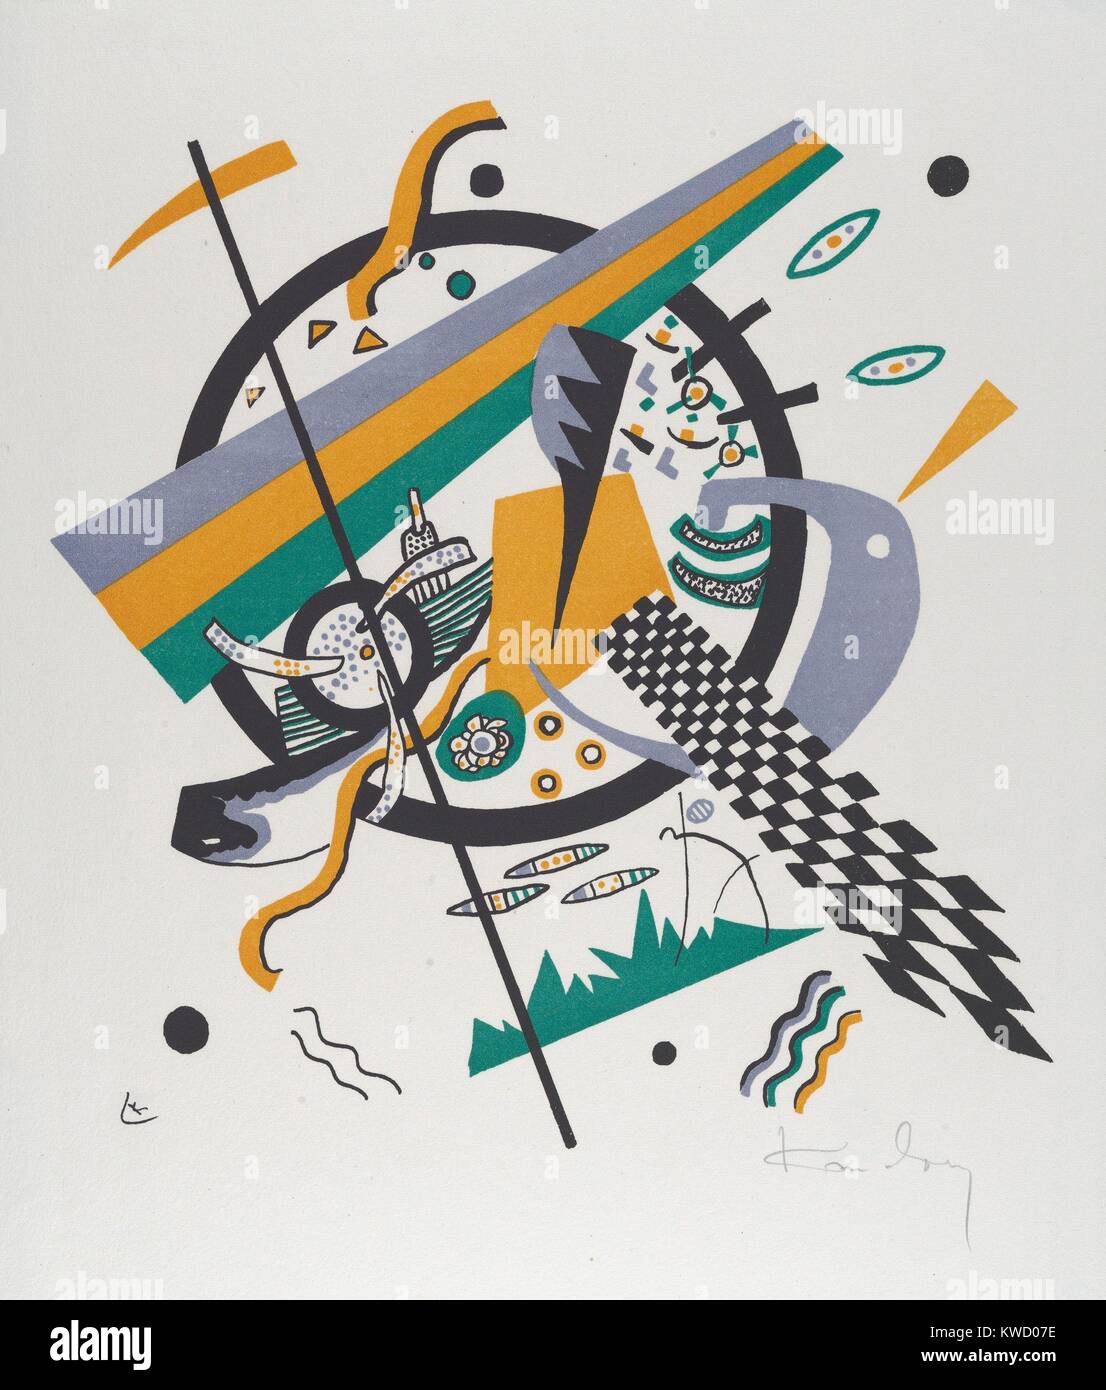 Kleine Welten III (petits mondes IV), par Vasily Kandinsky, 1922, expressionniste allemand russe imprimer. Grumes droites et sinueuses formes plates, de couleur, de cercles et formes dessinés à la main et d'un damier incliné contribuent à la complexité sur ce BSLOC résumé litho (2017 5 147) Banque D'Images